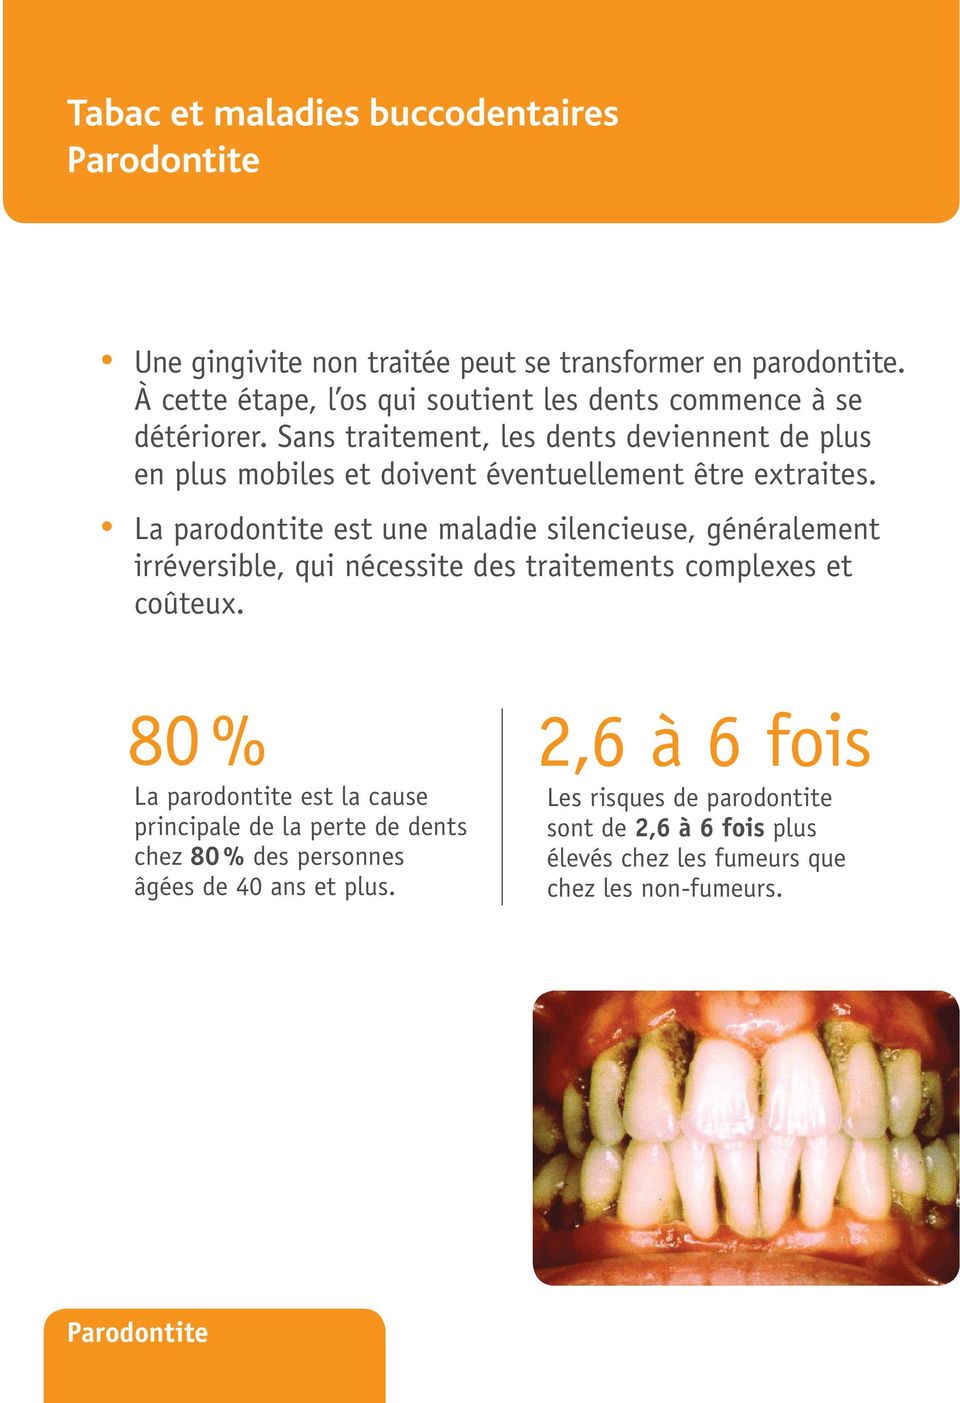 Sans traitement, les dents deviennent de plus en plus mobiles et doivent éventuellement être extraites.